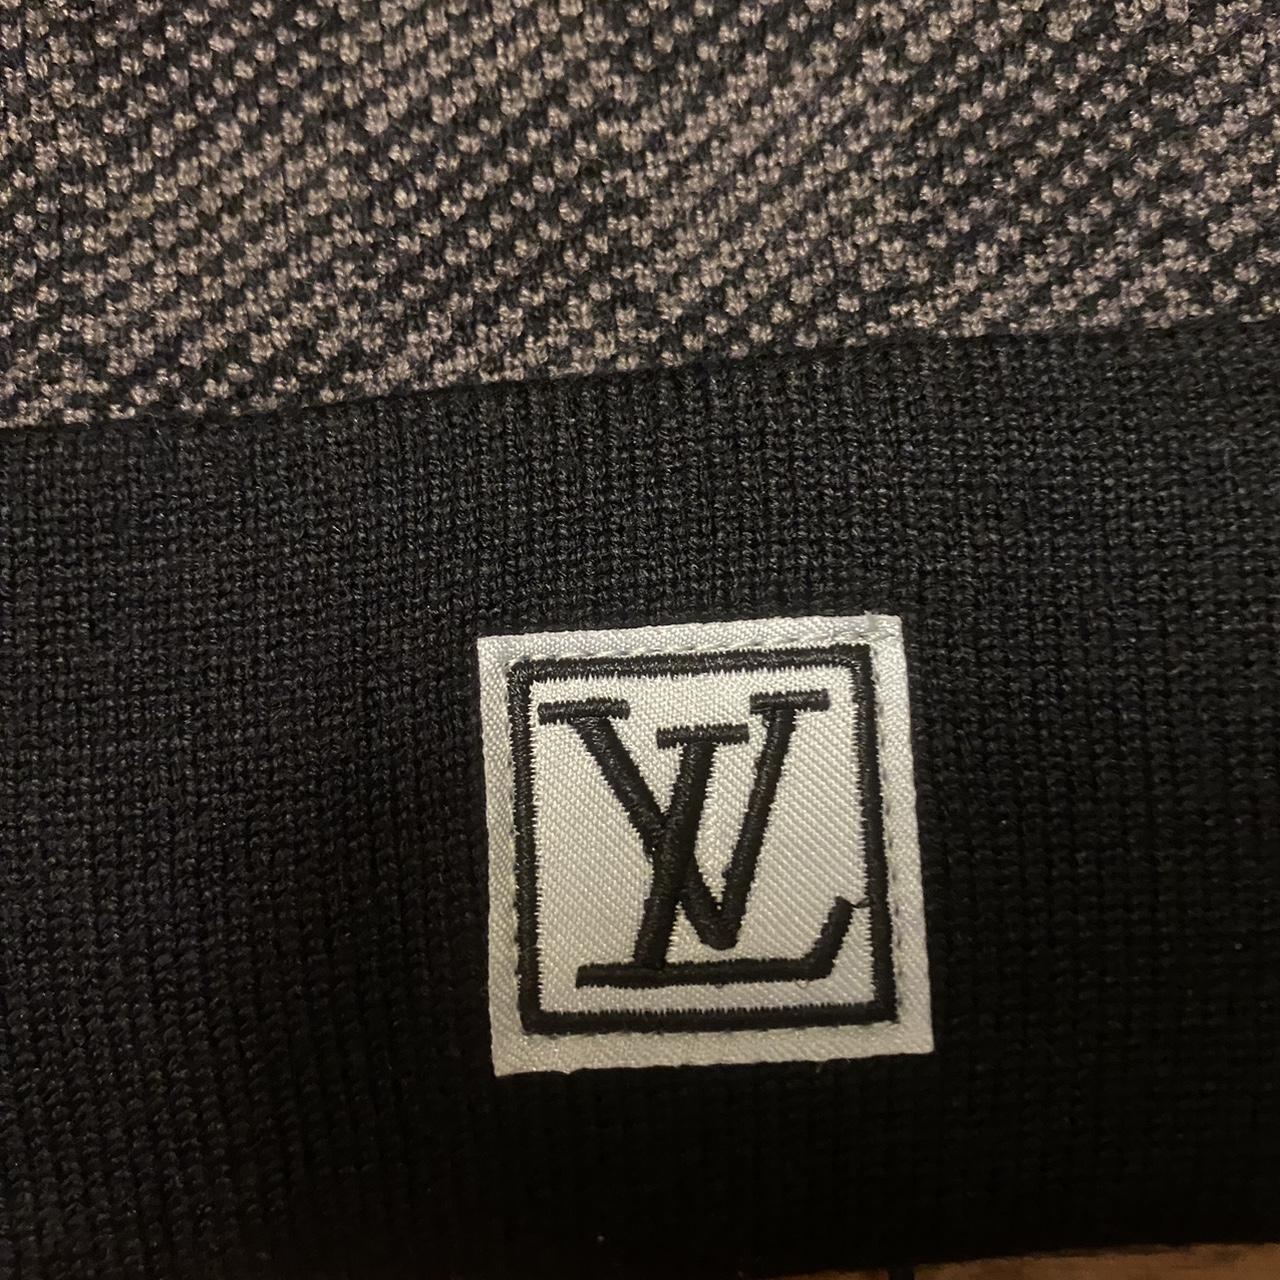 Black Louis Vuitton beanie. Friend gave to me as a - Depop